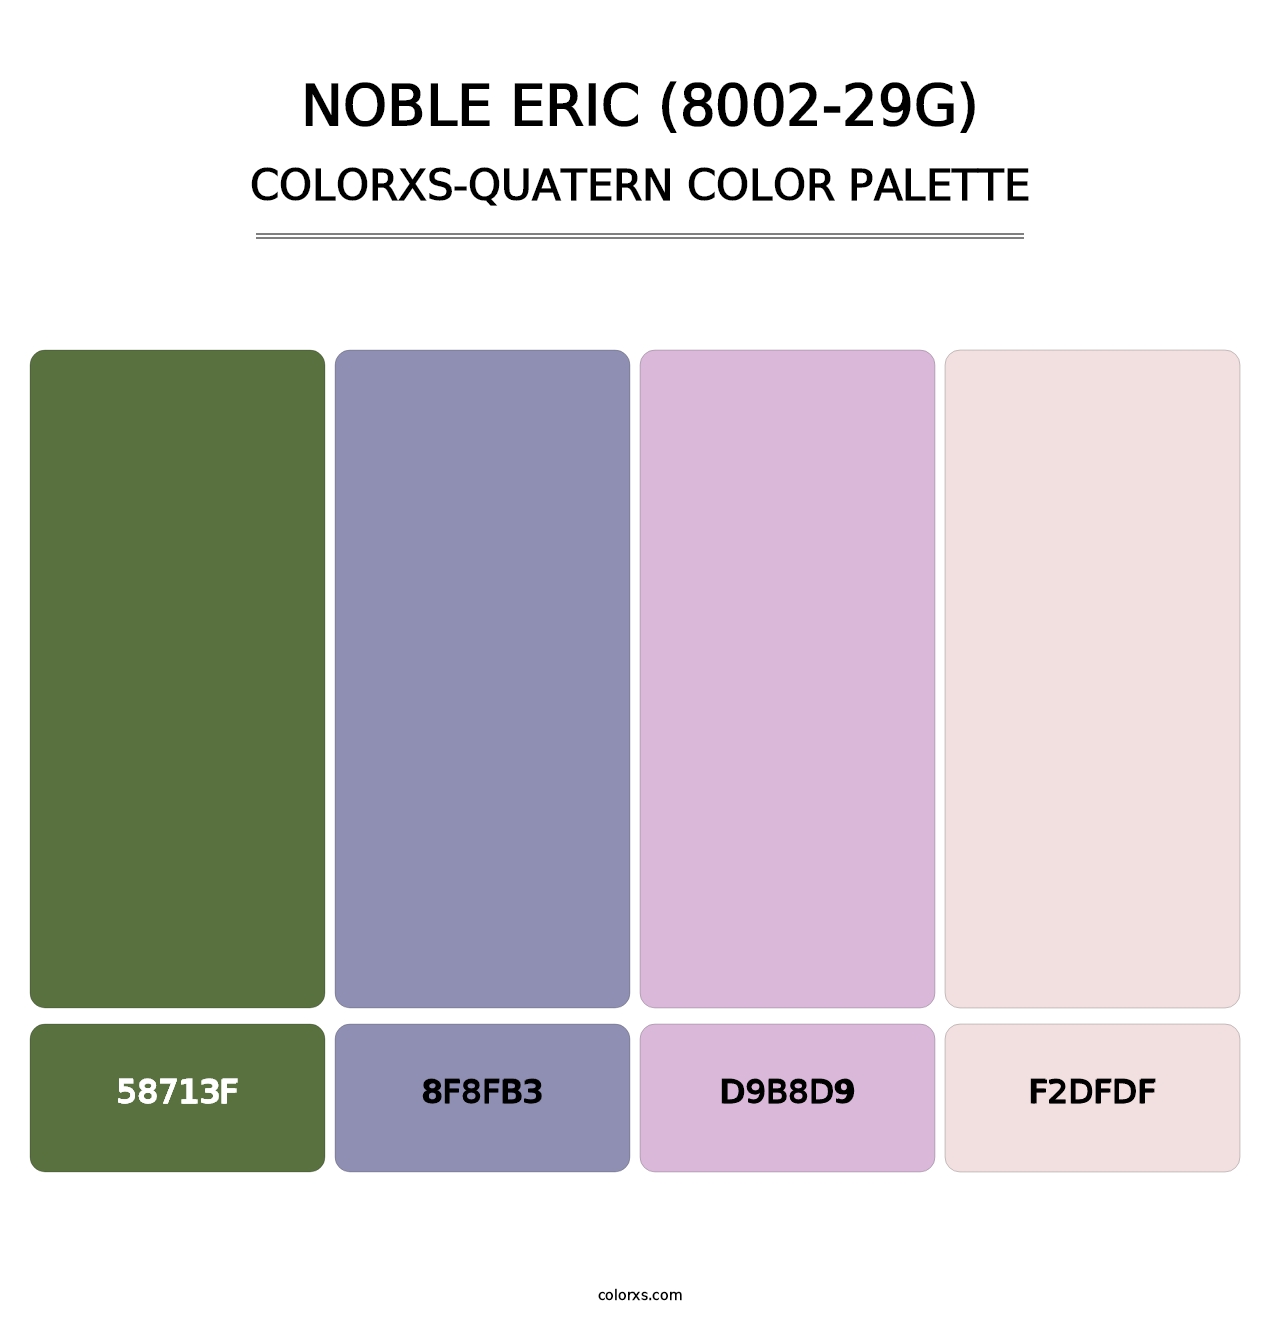 Noble Eric (8002-29G) - Colorxs Quatern Palette